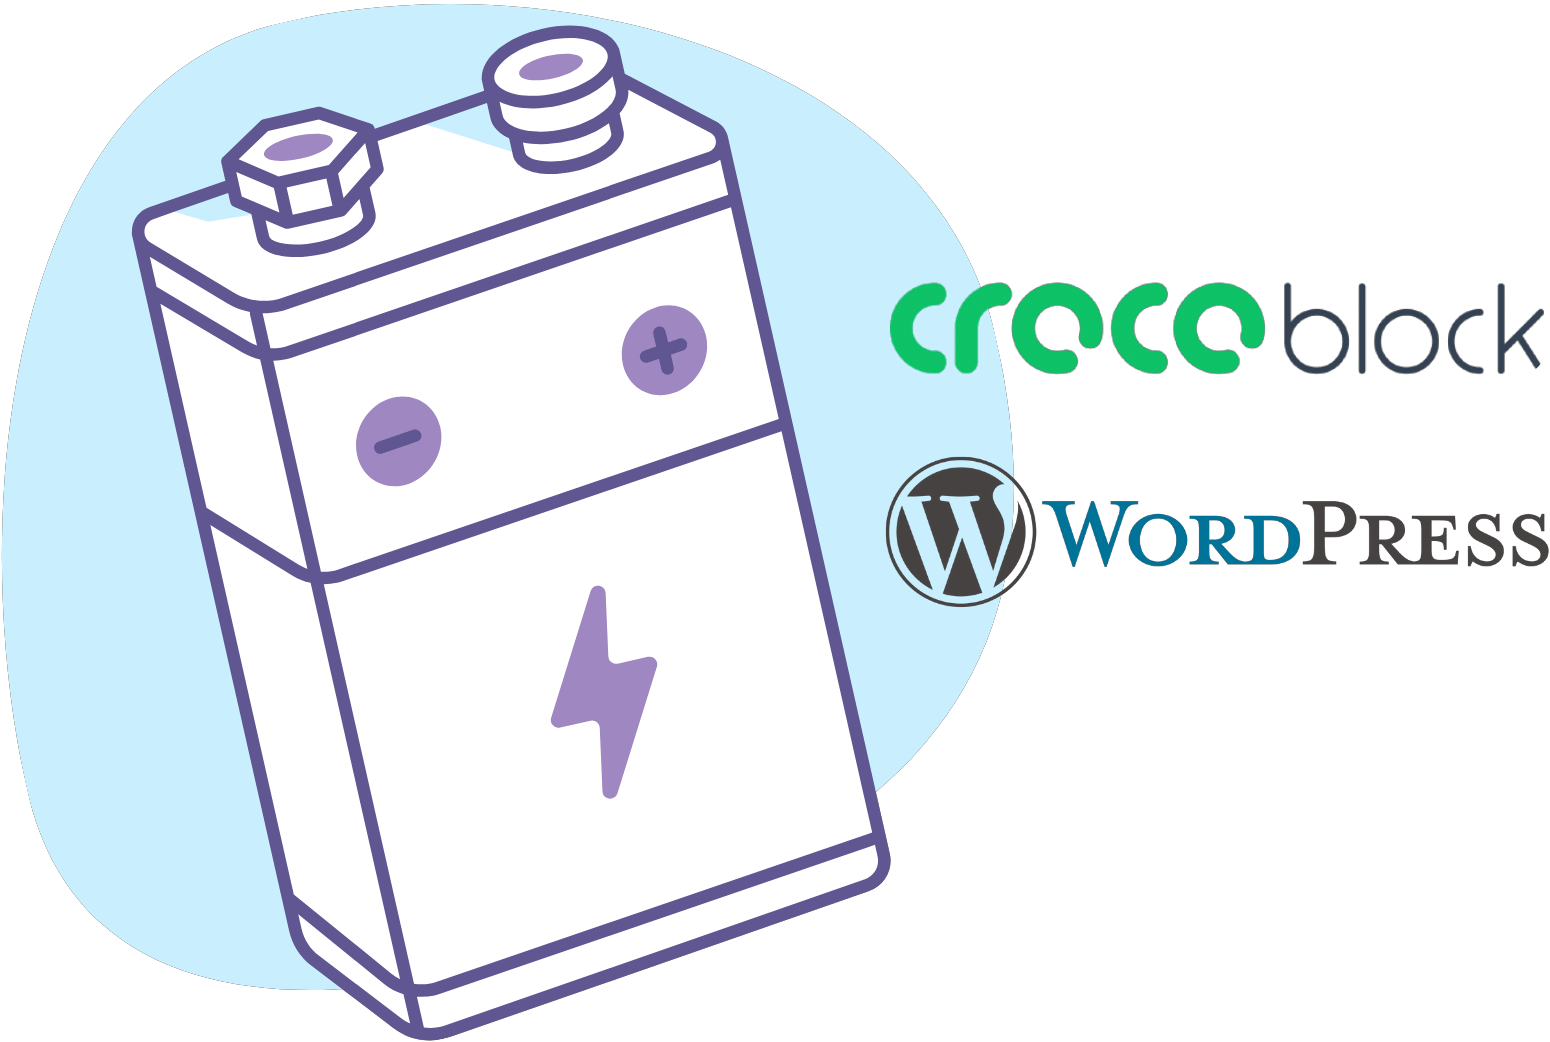 Crocoblock und WordPress Webdesign